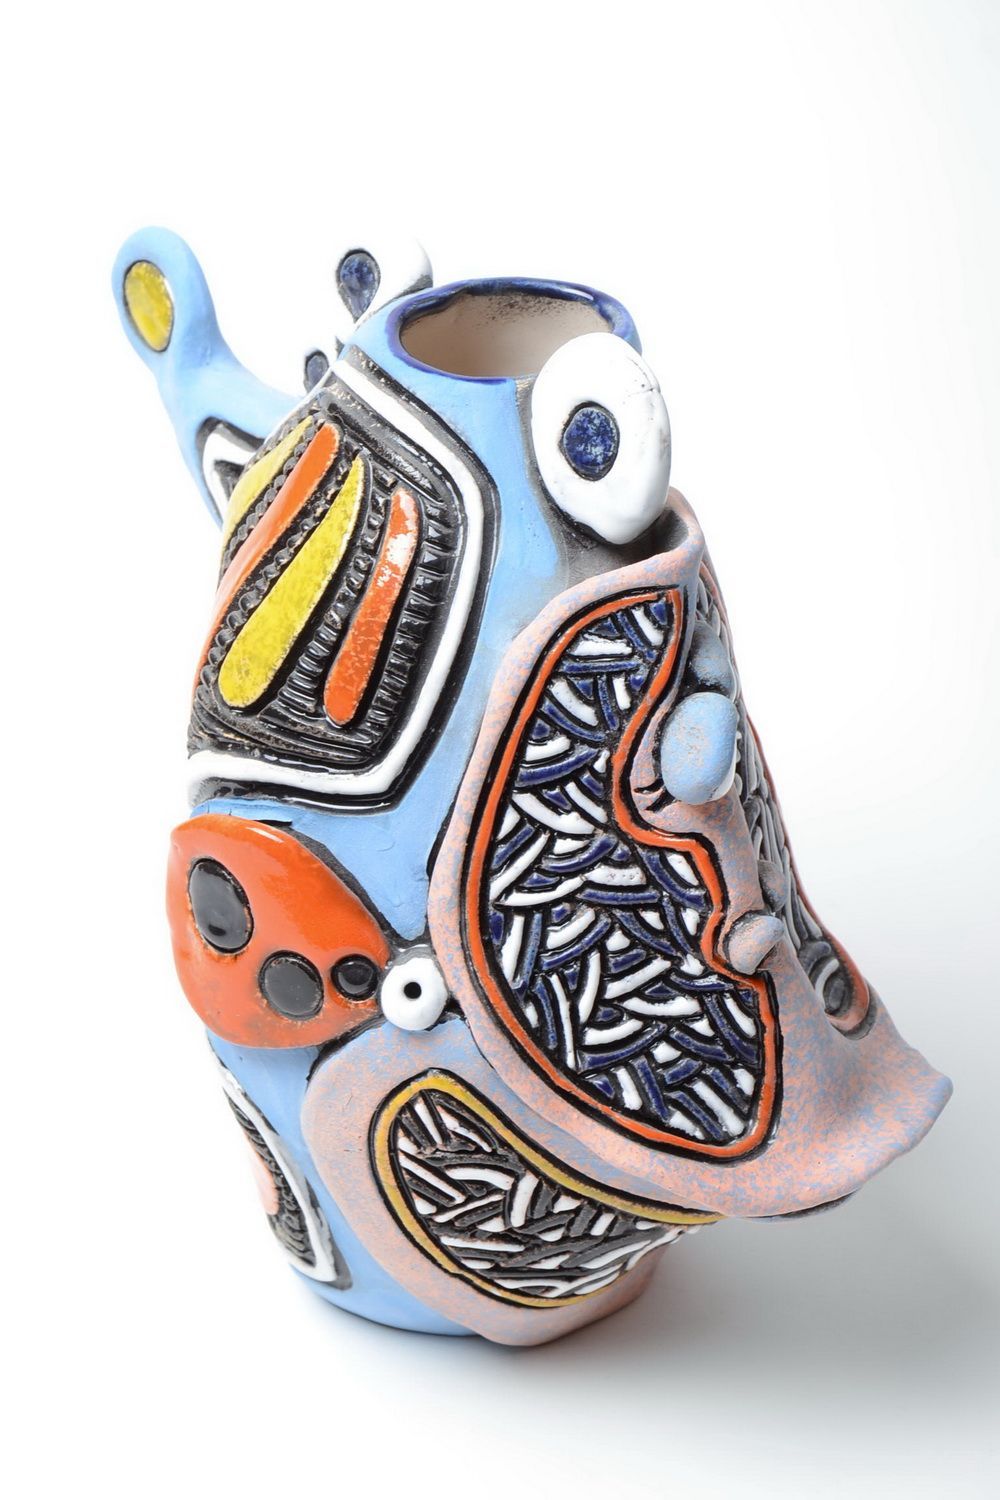 Farbige Ton Vase handmade in Form vom Fisch mit Pigmenten bemalt 1.8 L foto 5